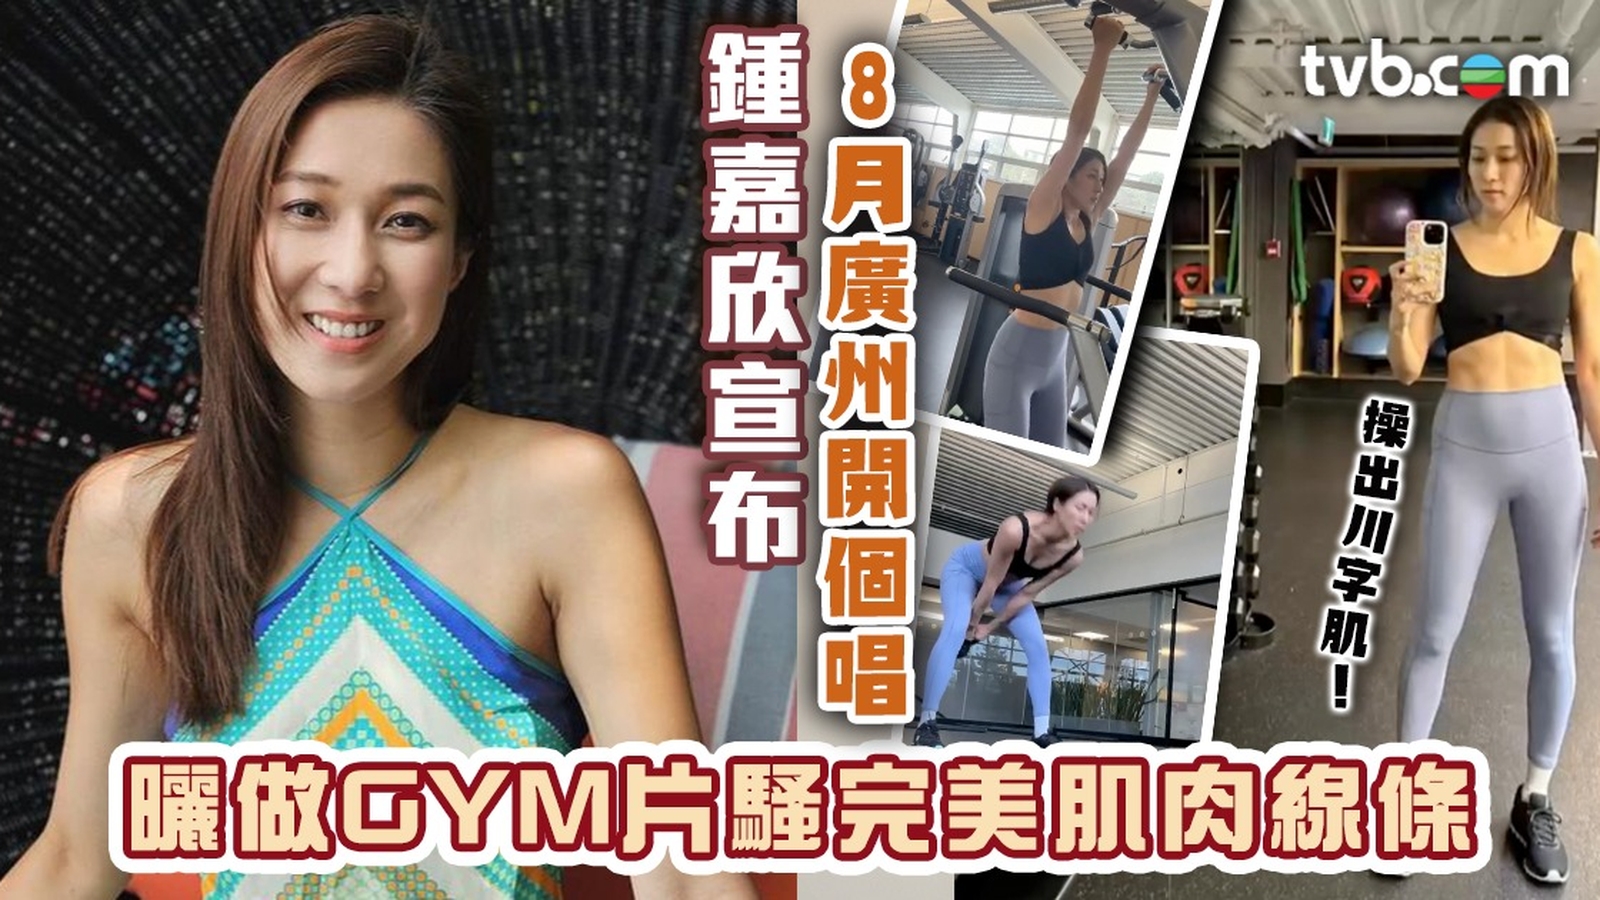 鍾嘉欣宣布8月廣州開個唱 曬做GYM片騷完美肌肉線條 川字肌明顯